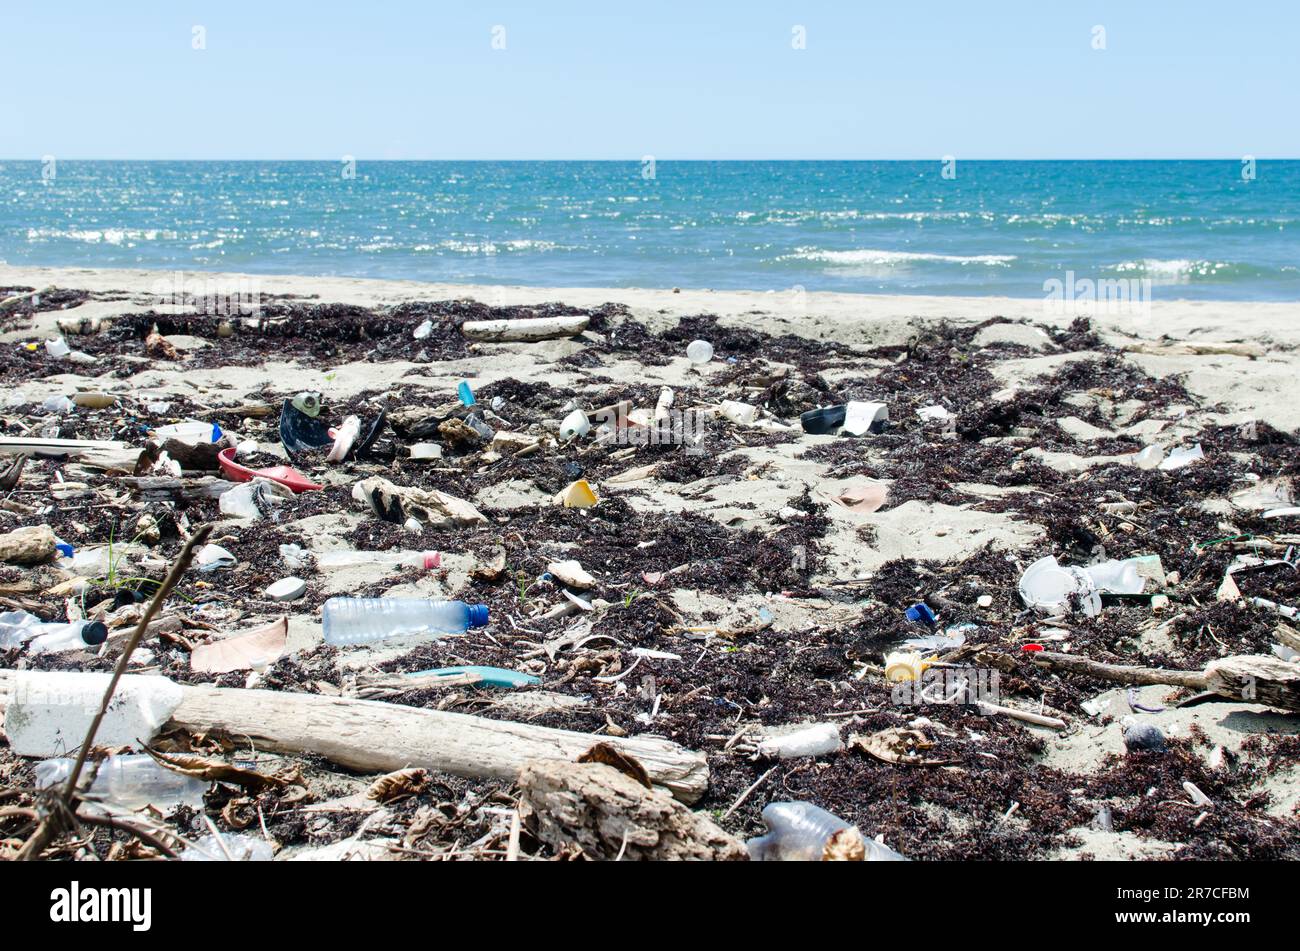 Une plage peu visitée fortement contaminée par des plastiques dans la province de Colón, sur la côte des Caraïbes du Panama. Banque D'Images